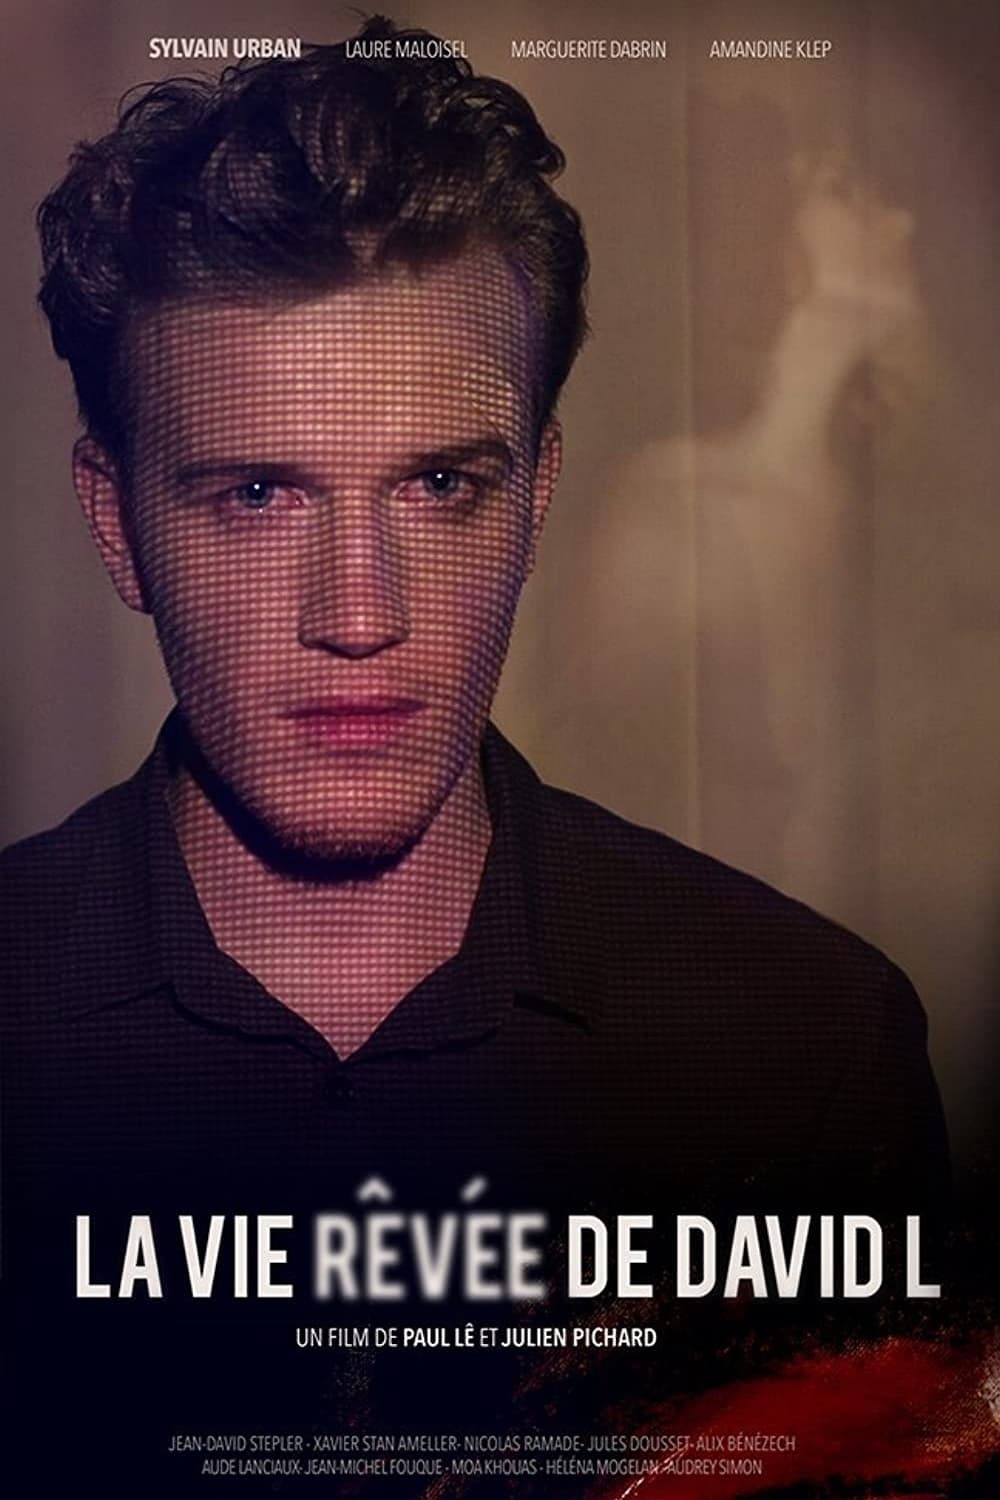 The Dreamlife of David L (2014)